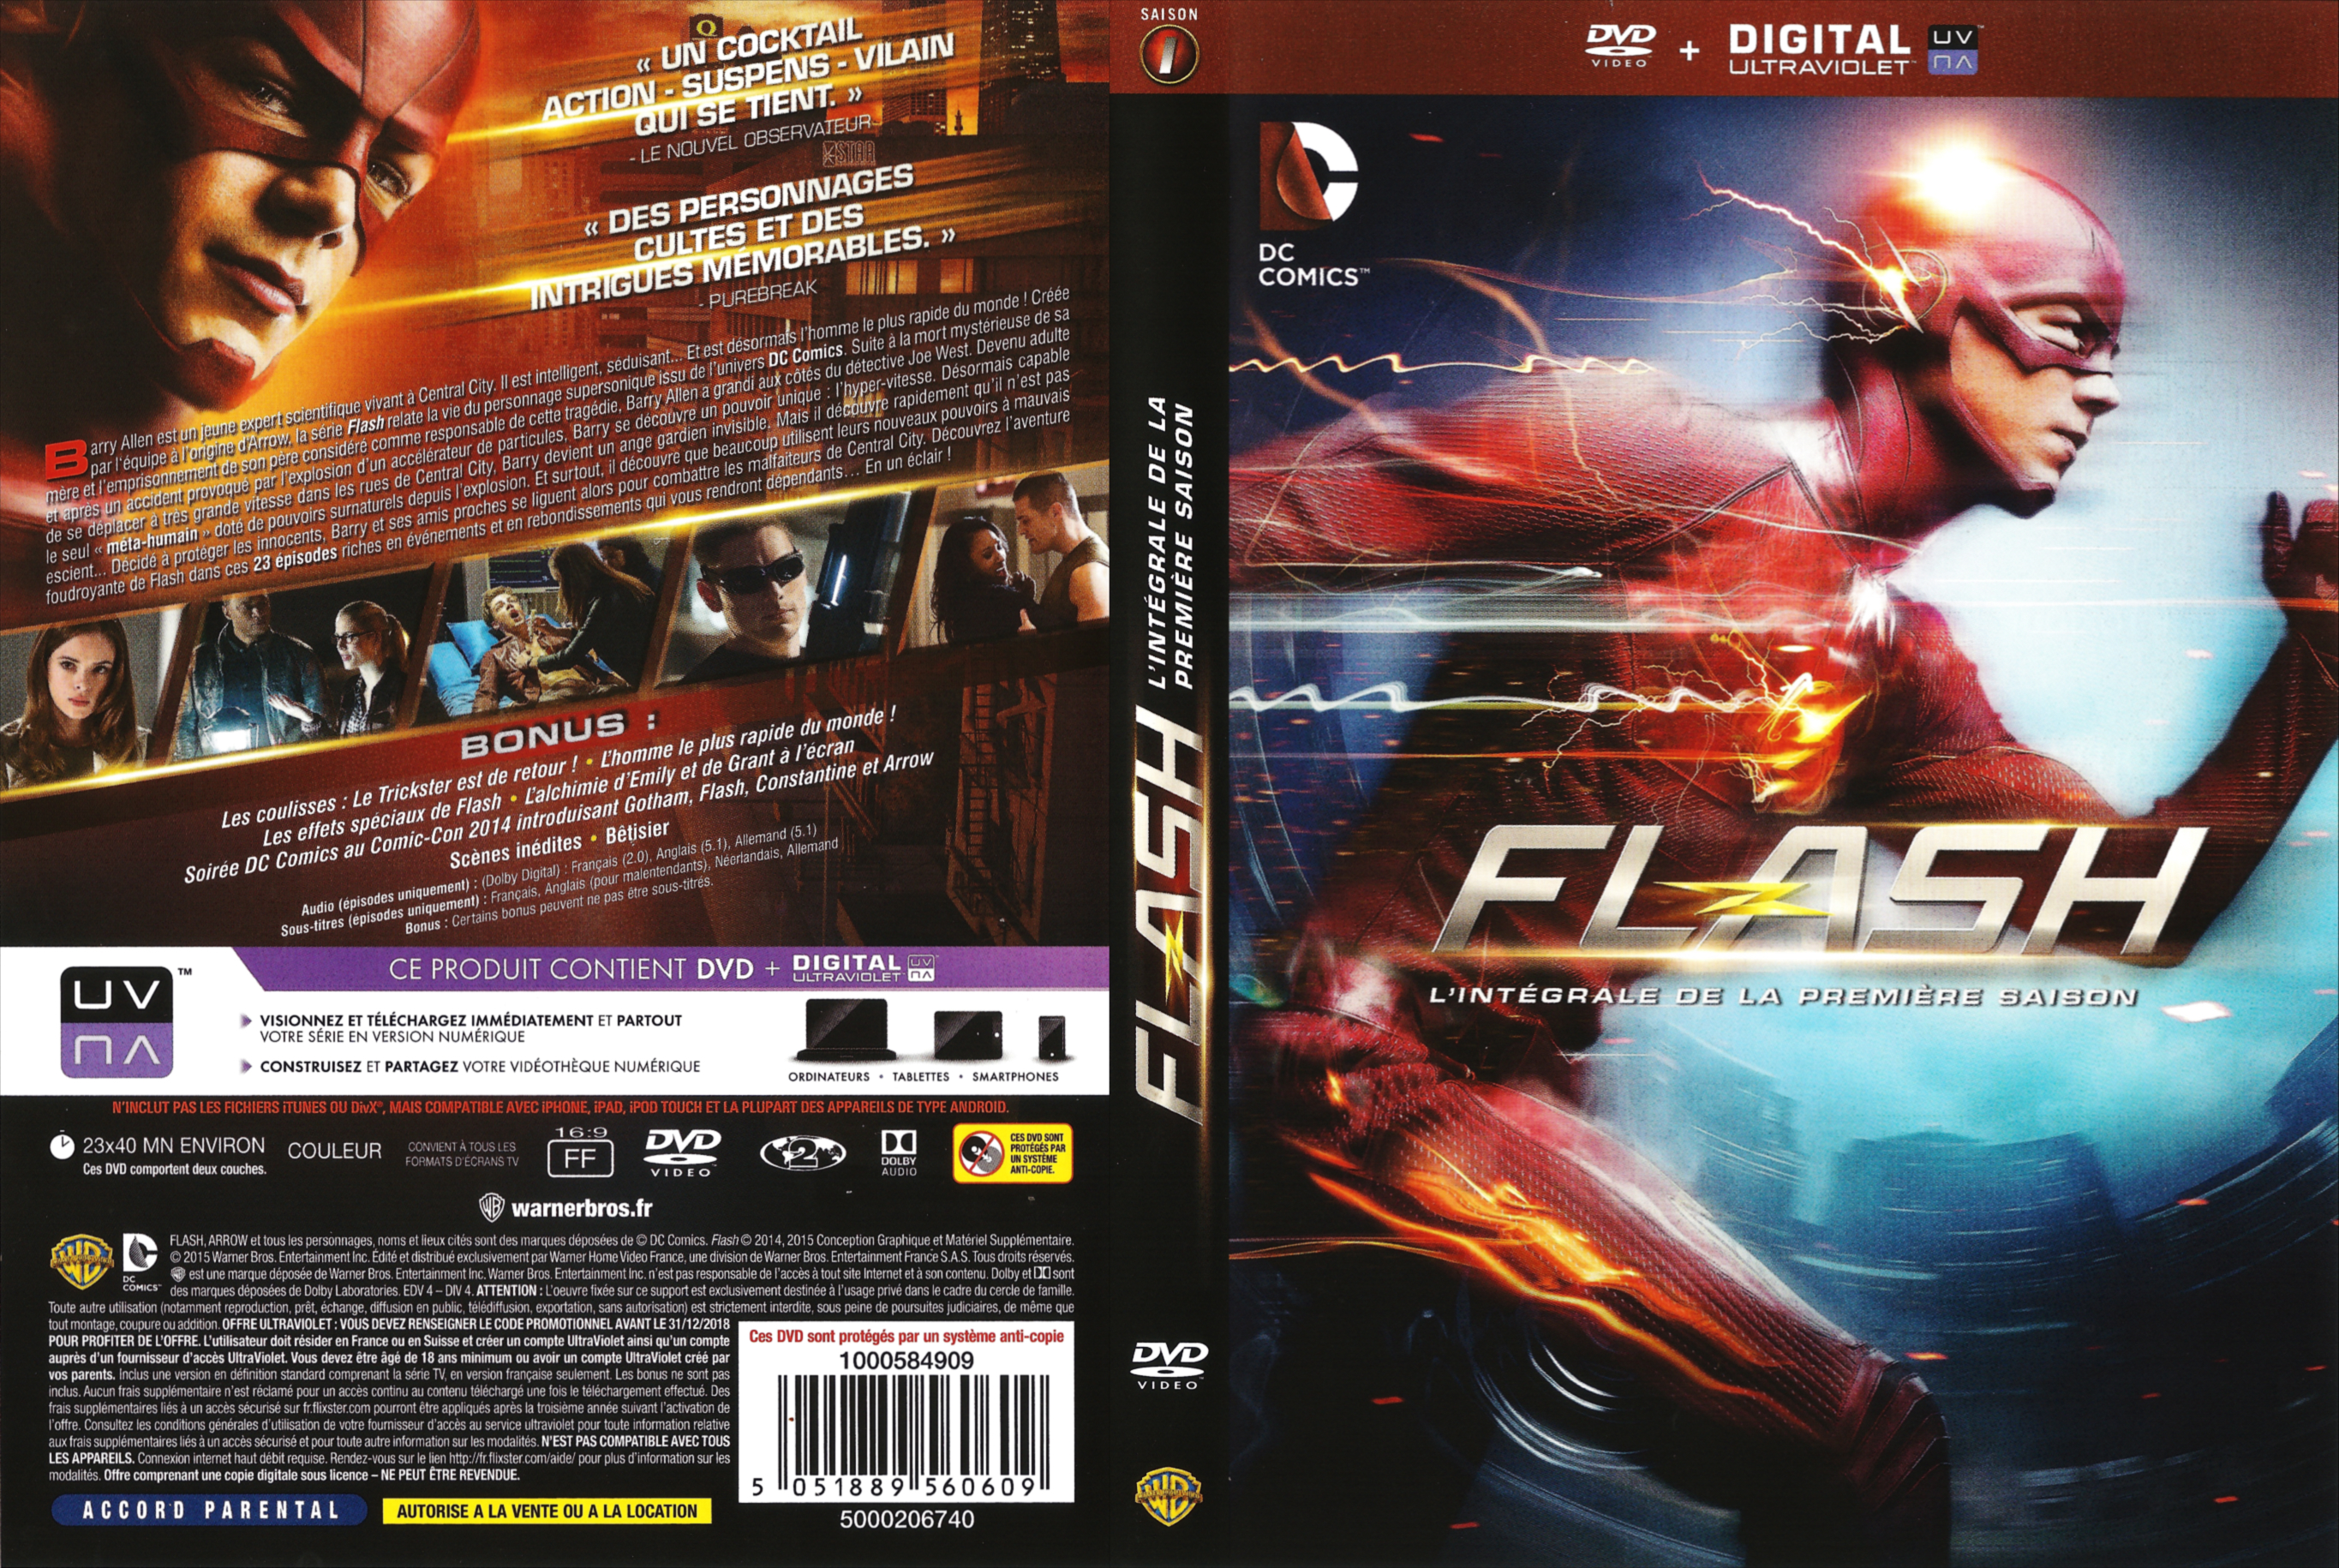 Jaquette DVD Flash saison 1